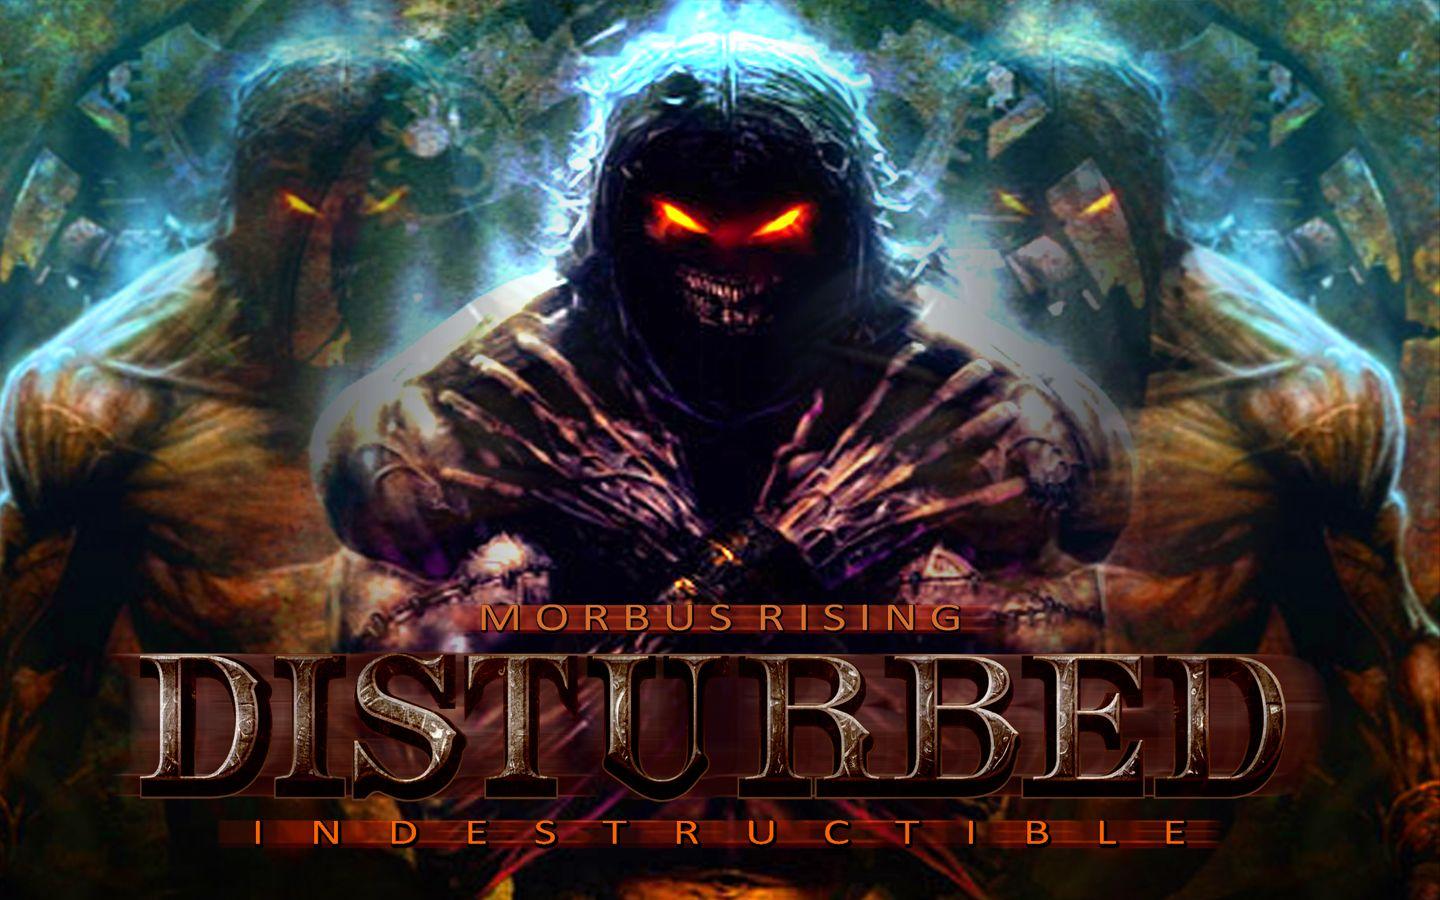 Download the Disturbed Indestructible Wallpaper, Disturbed